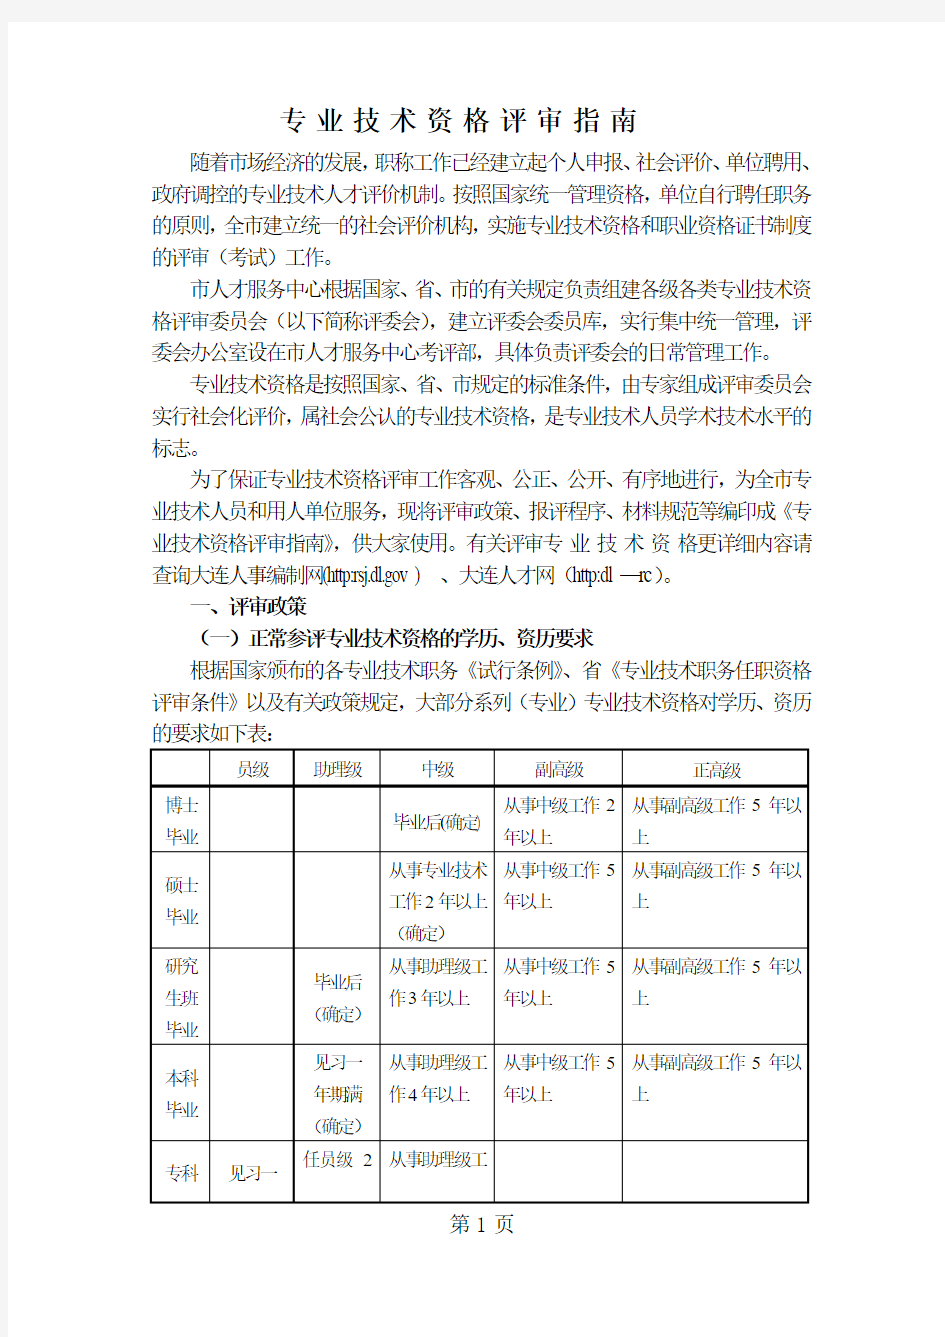 专业技术资格评审指南辽宁大连-12页文档资料